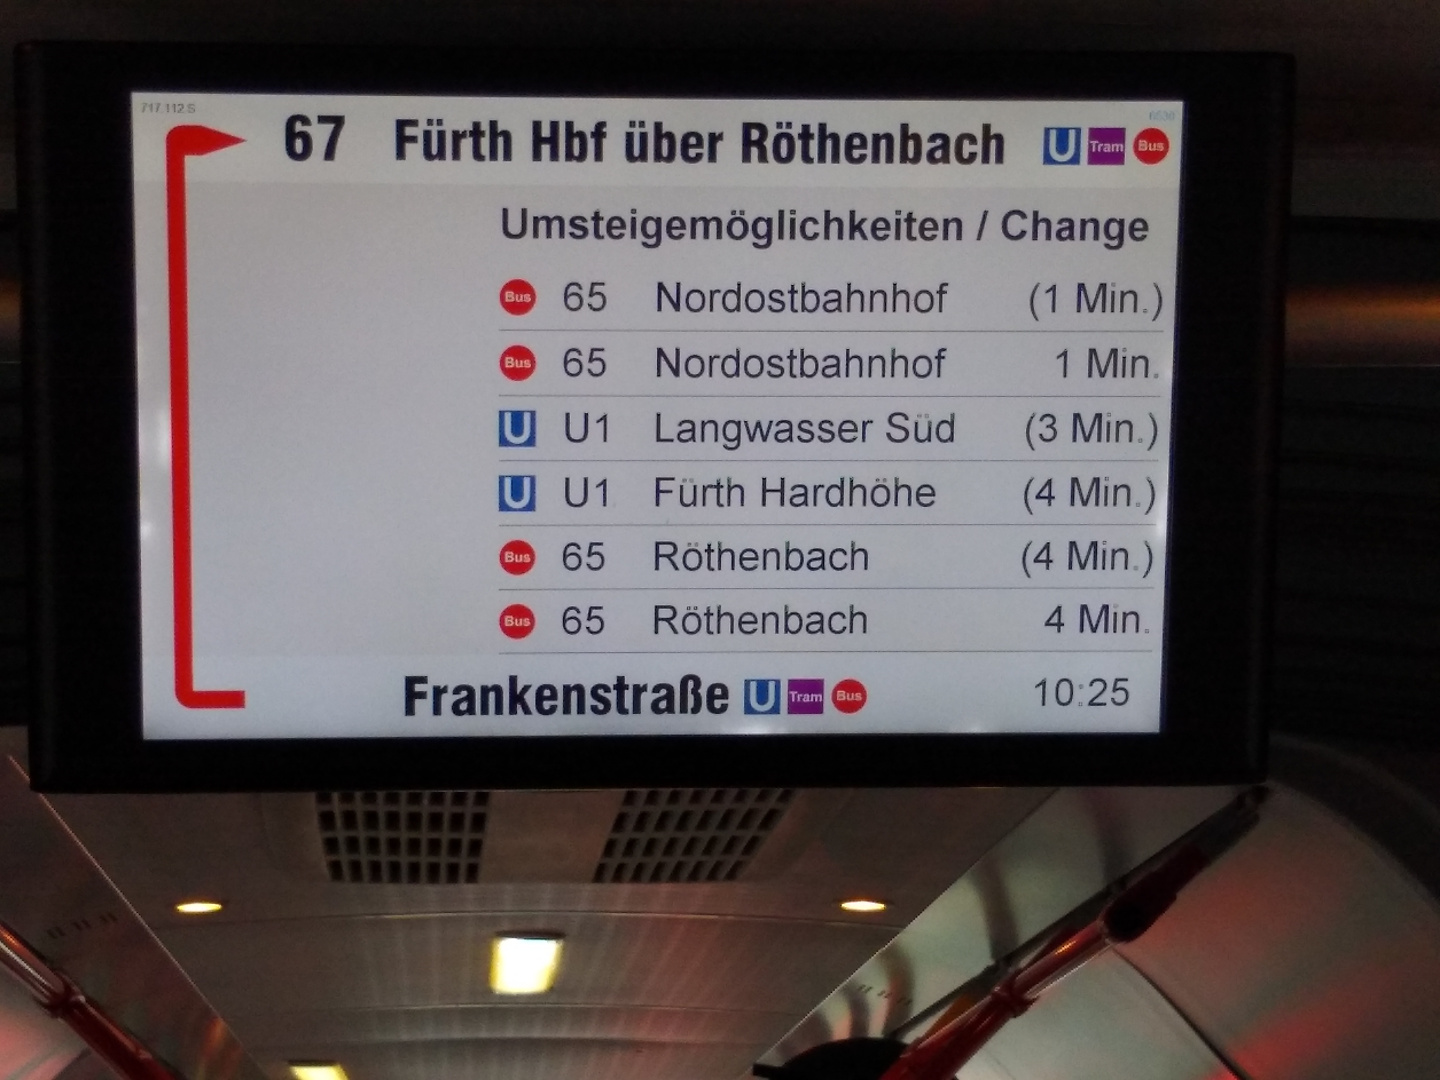 Doppelte Anzeige aller Busse (da Live- und Fahrplan-Daten gleichzeitig vorhanden sind). Info-Display im Bus Linie 67 Richtung Frankenstraße kurz vor der Endhaltestelle (Display zeigt schon Rückwärtsrichtung Fürth Hauptbahnhof). Zu sehen sind die Umsteigemöglichkeiten. Angeblich fahren Linie 65 jeweils 2 Busse zur selben Zeit. Die eine Zeile zeigt Live-Daten (ohne Klammern), die andere Fahrplan-Daten (mit Klammern).